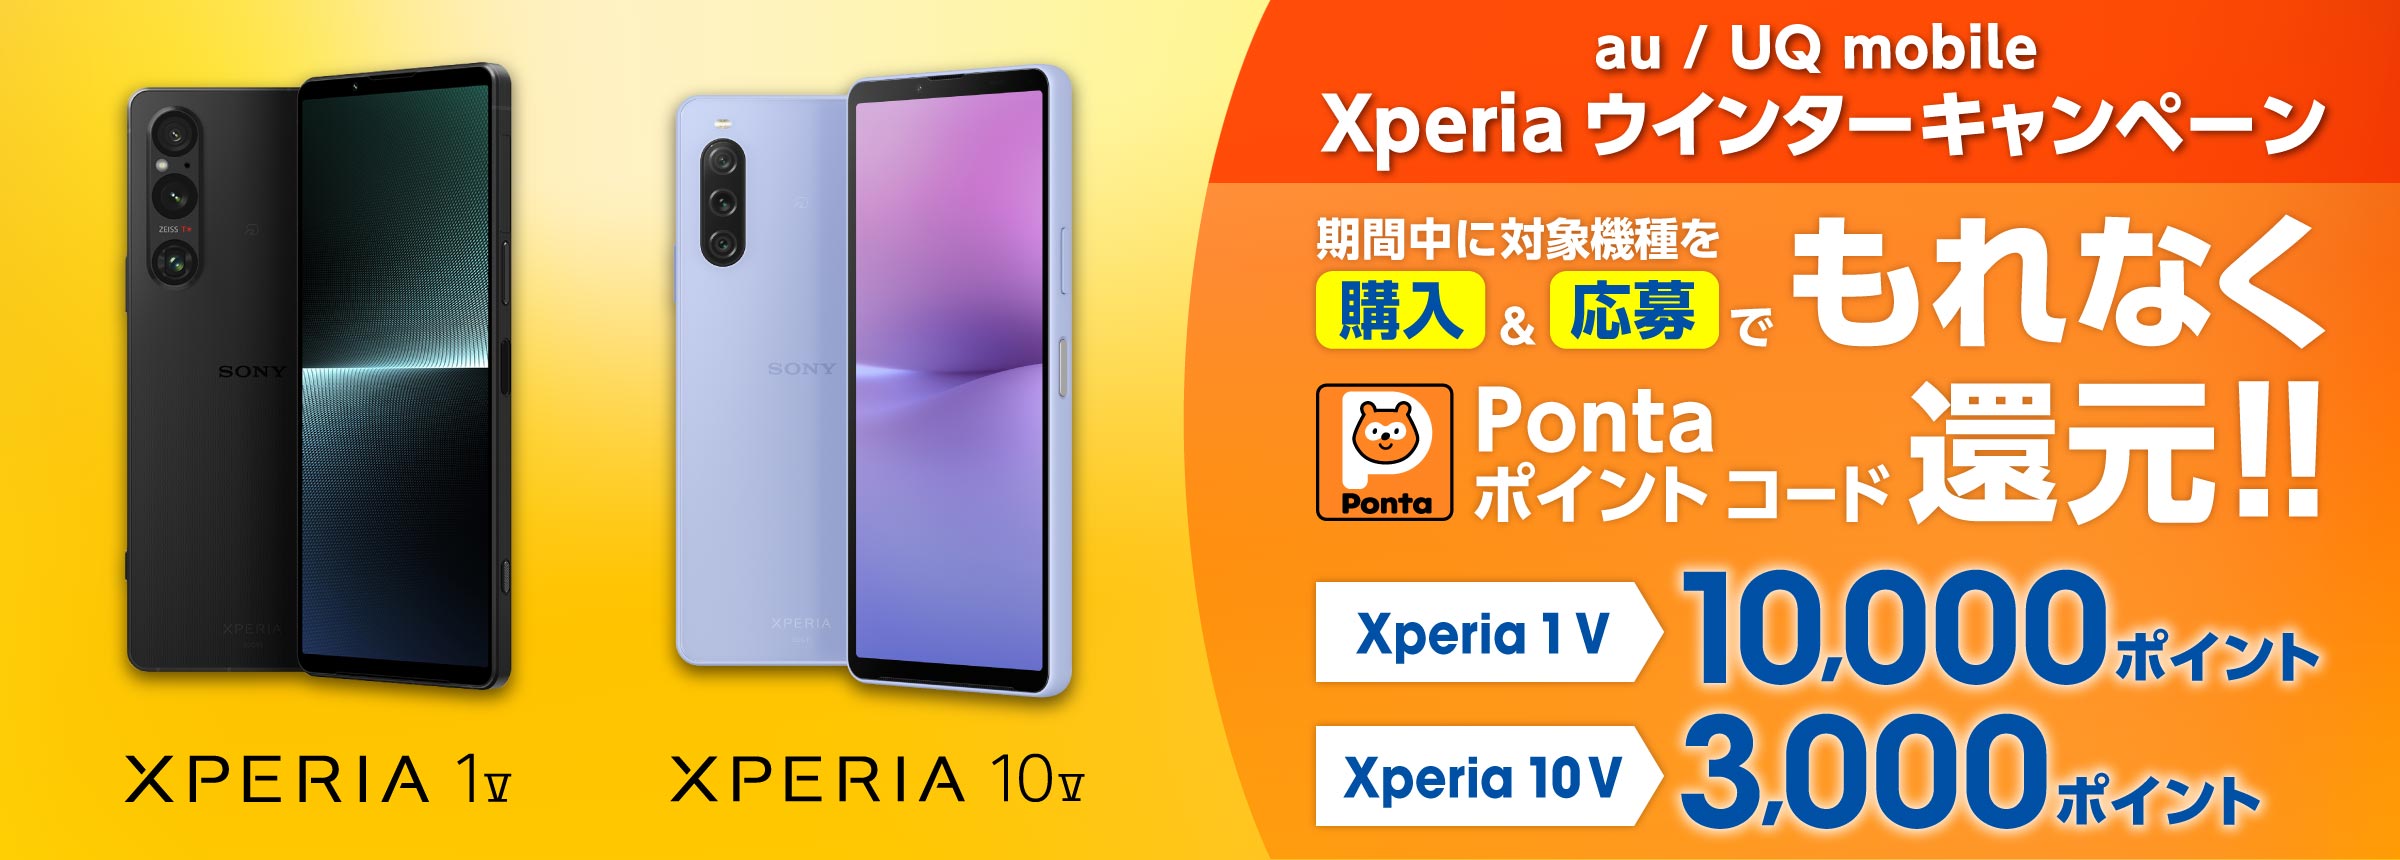 au / UQ mobile​ Xperia ウインターキャンペーン 期間中に対象機種を購入＆応募でもれなく Pontaポイント コード 還元！ Xperia 1 V 10,000ポイント Xperia 10 V 3,000ポイント